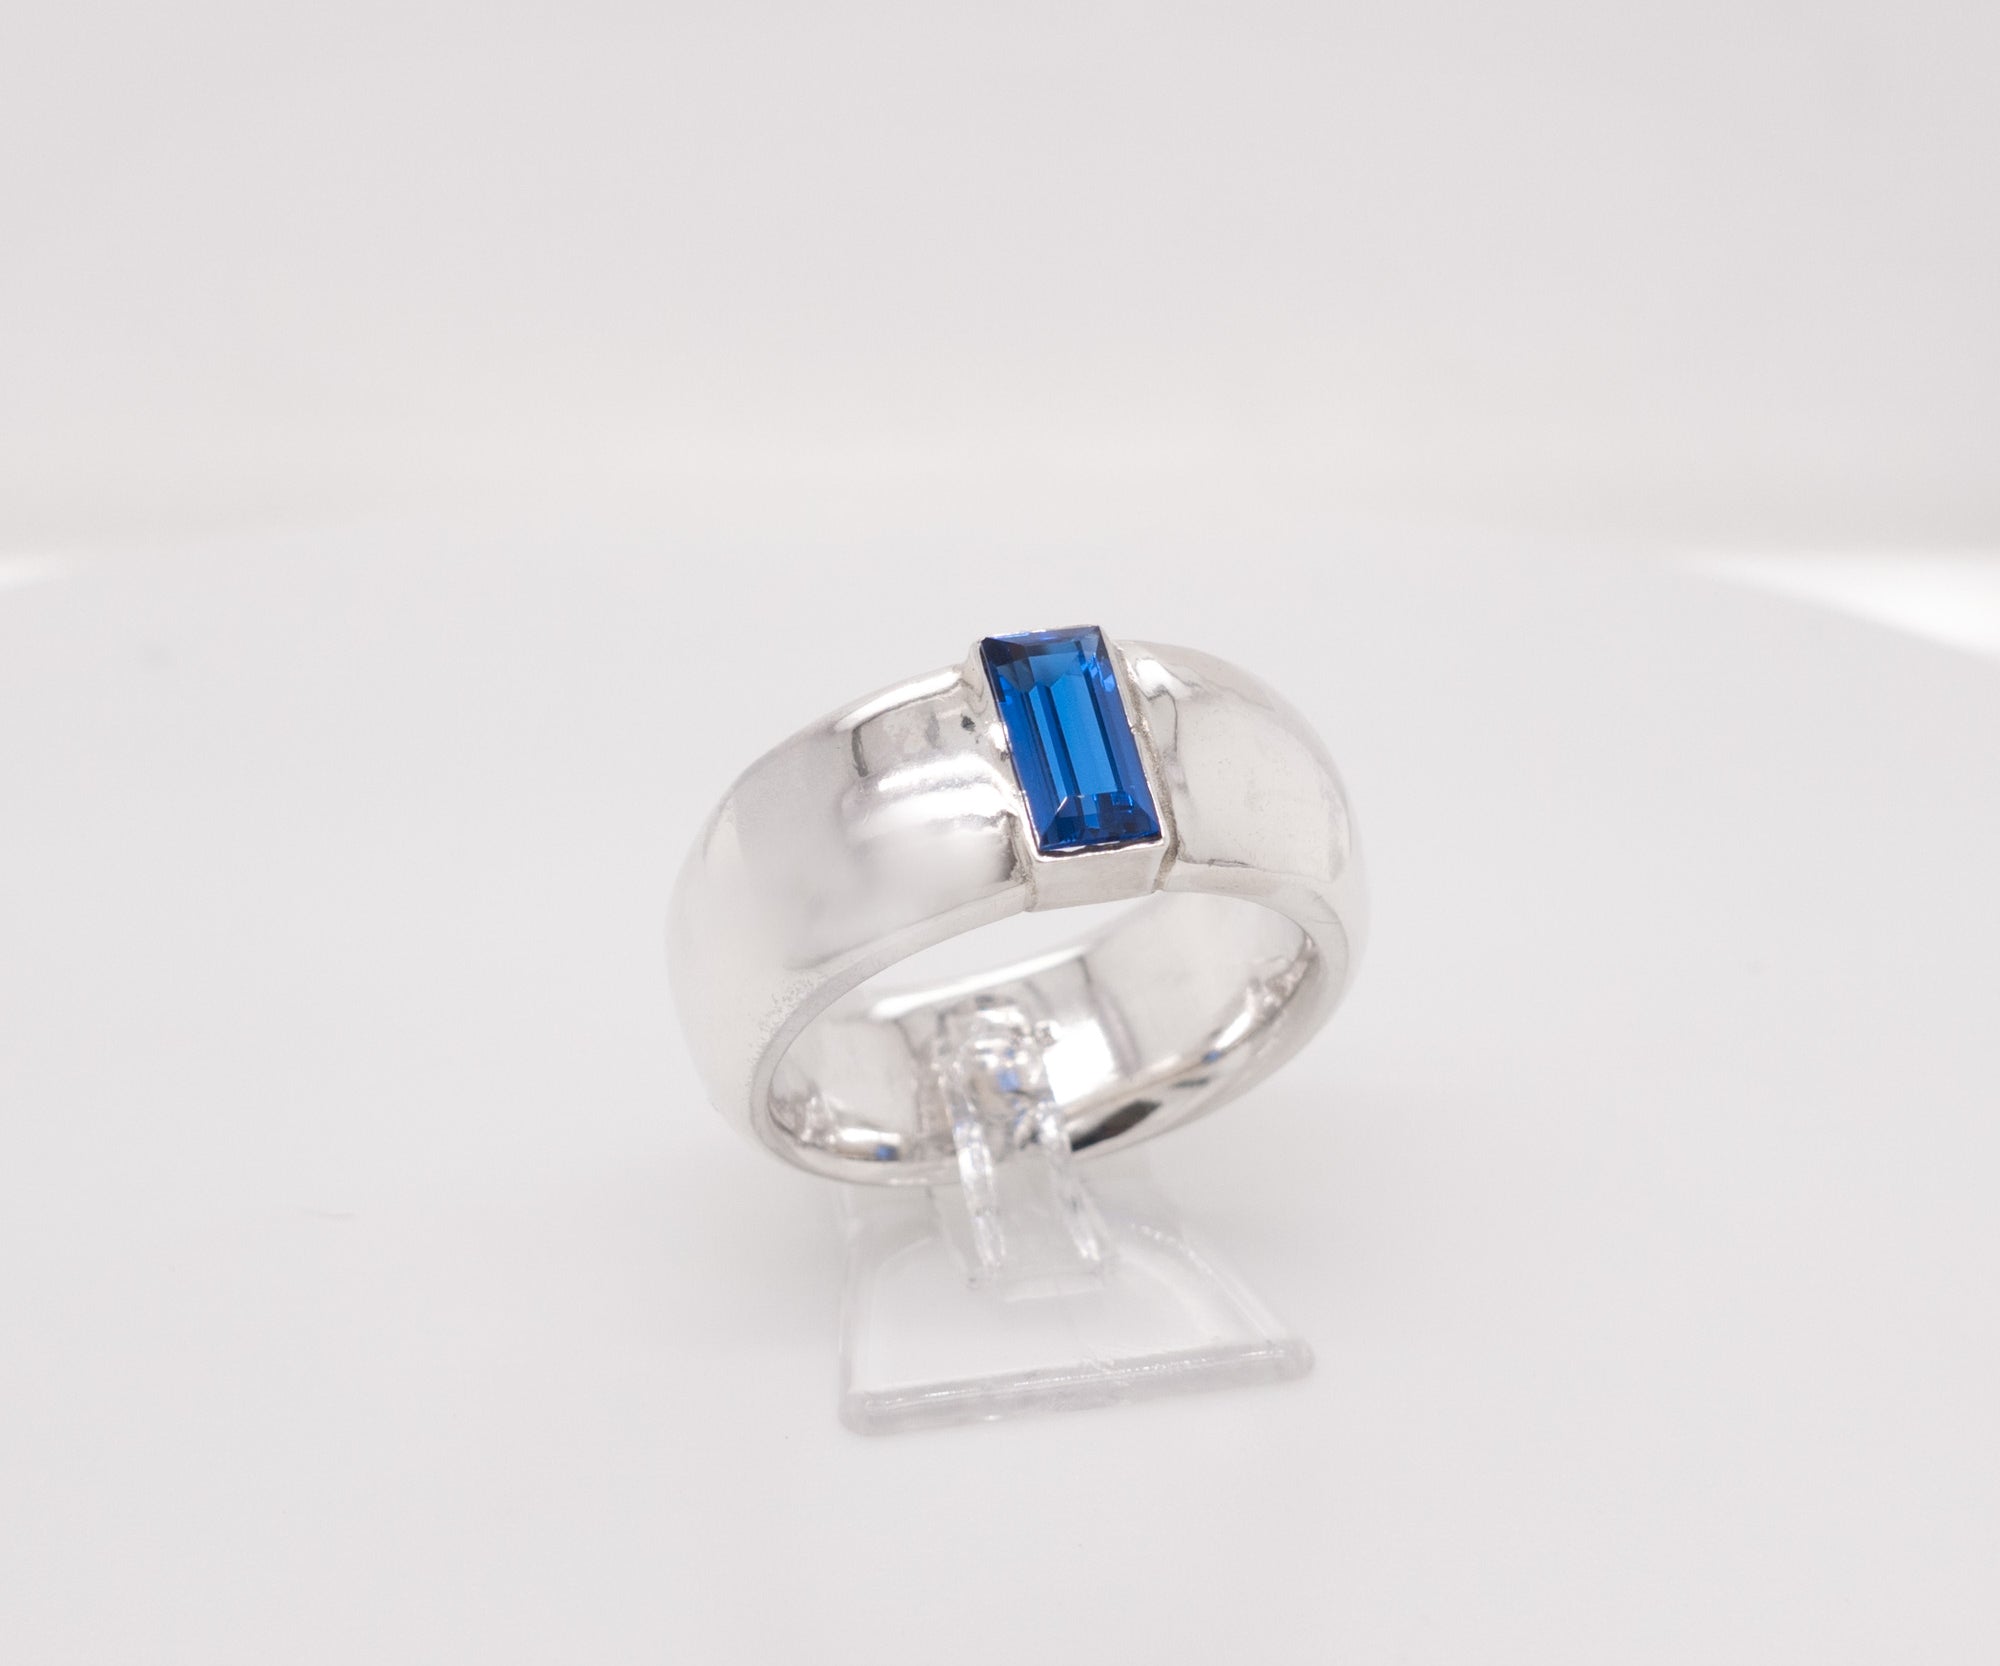 HEDDA – Ring mit blauem Zirkonia